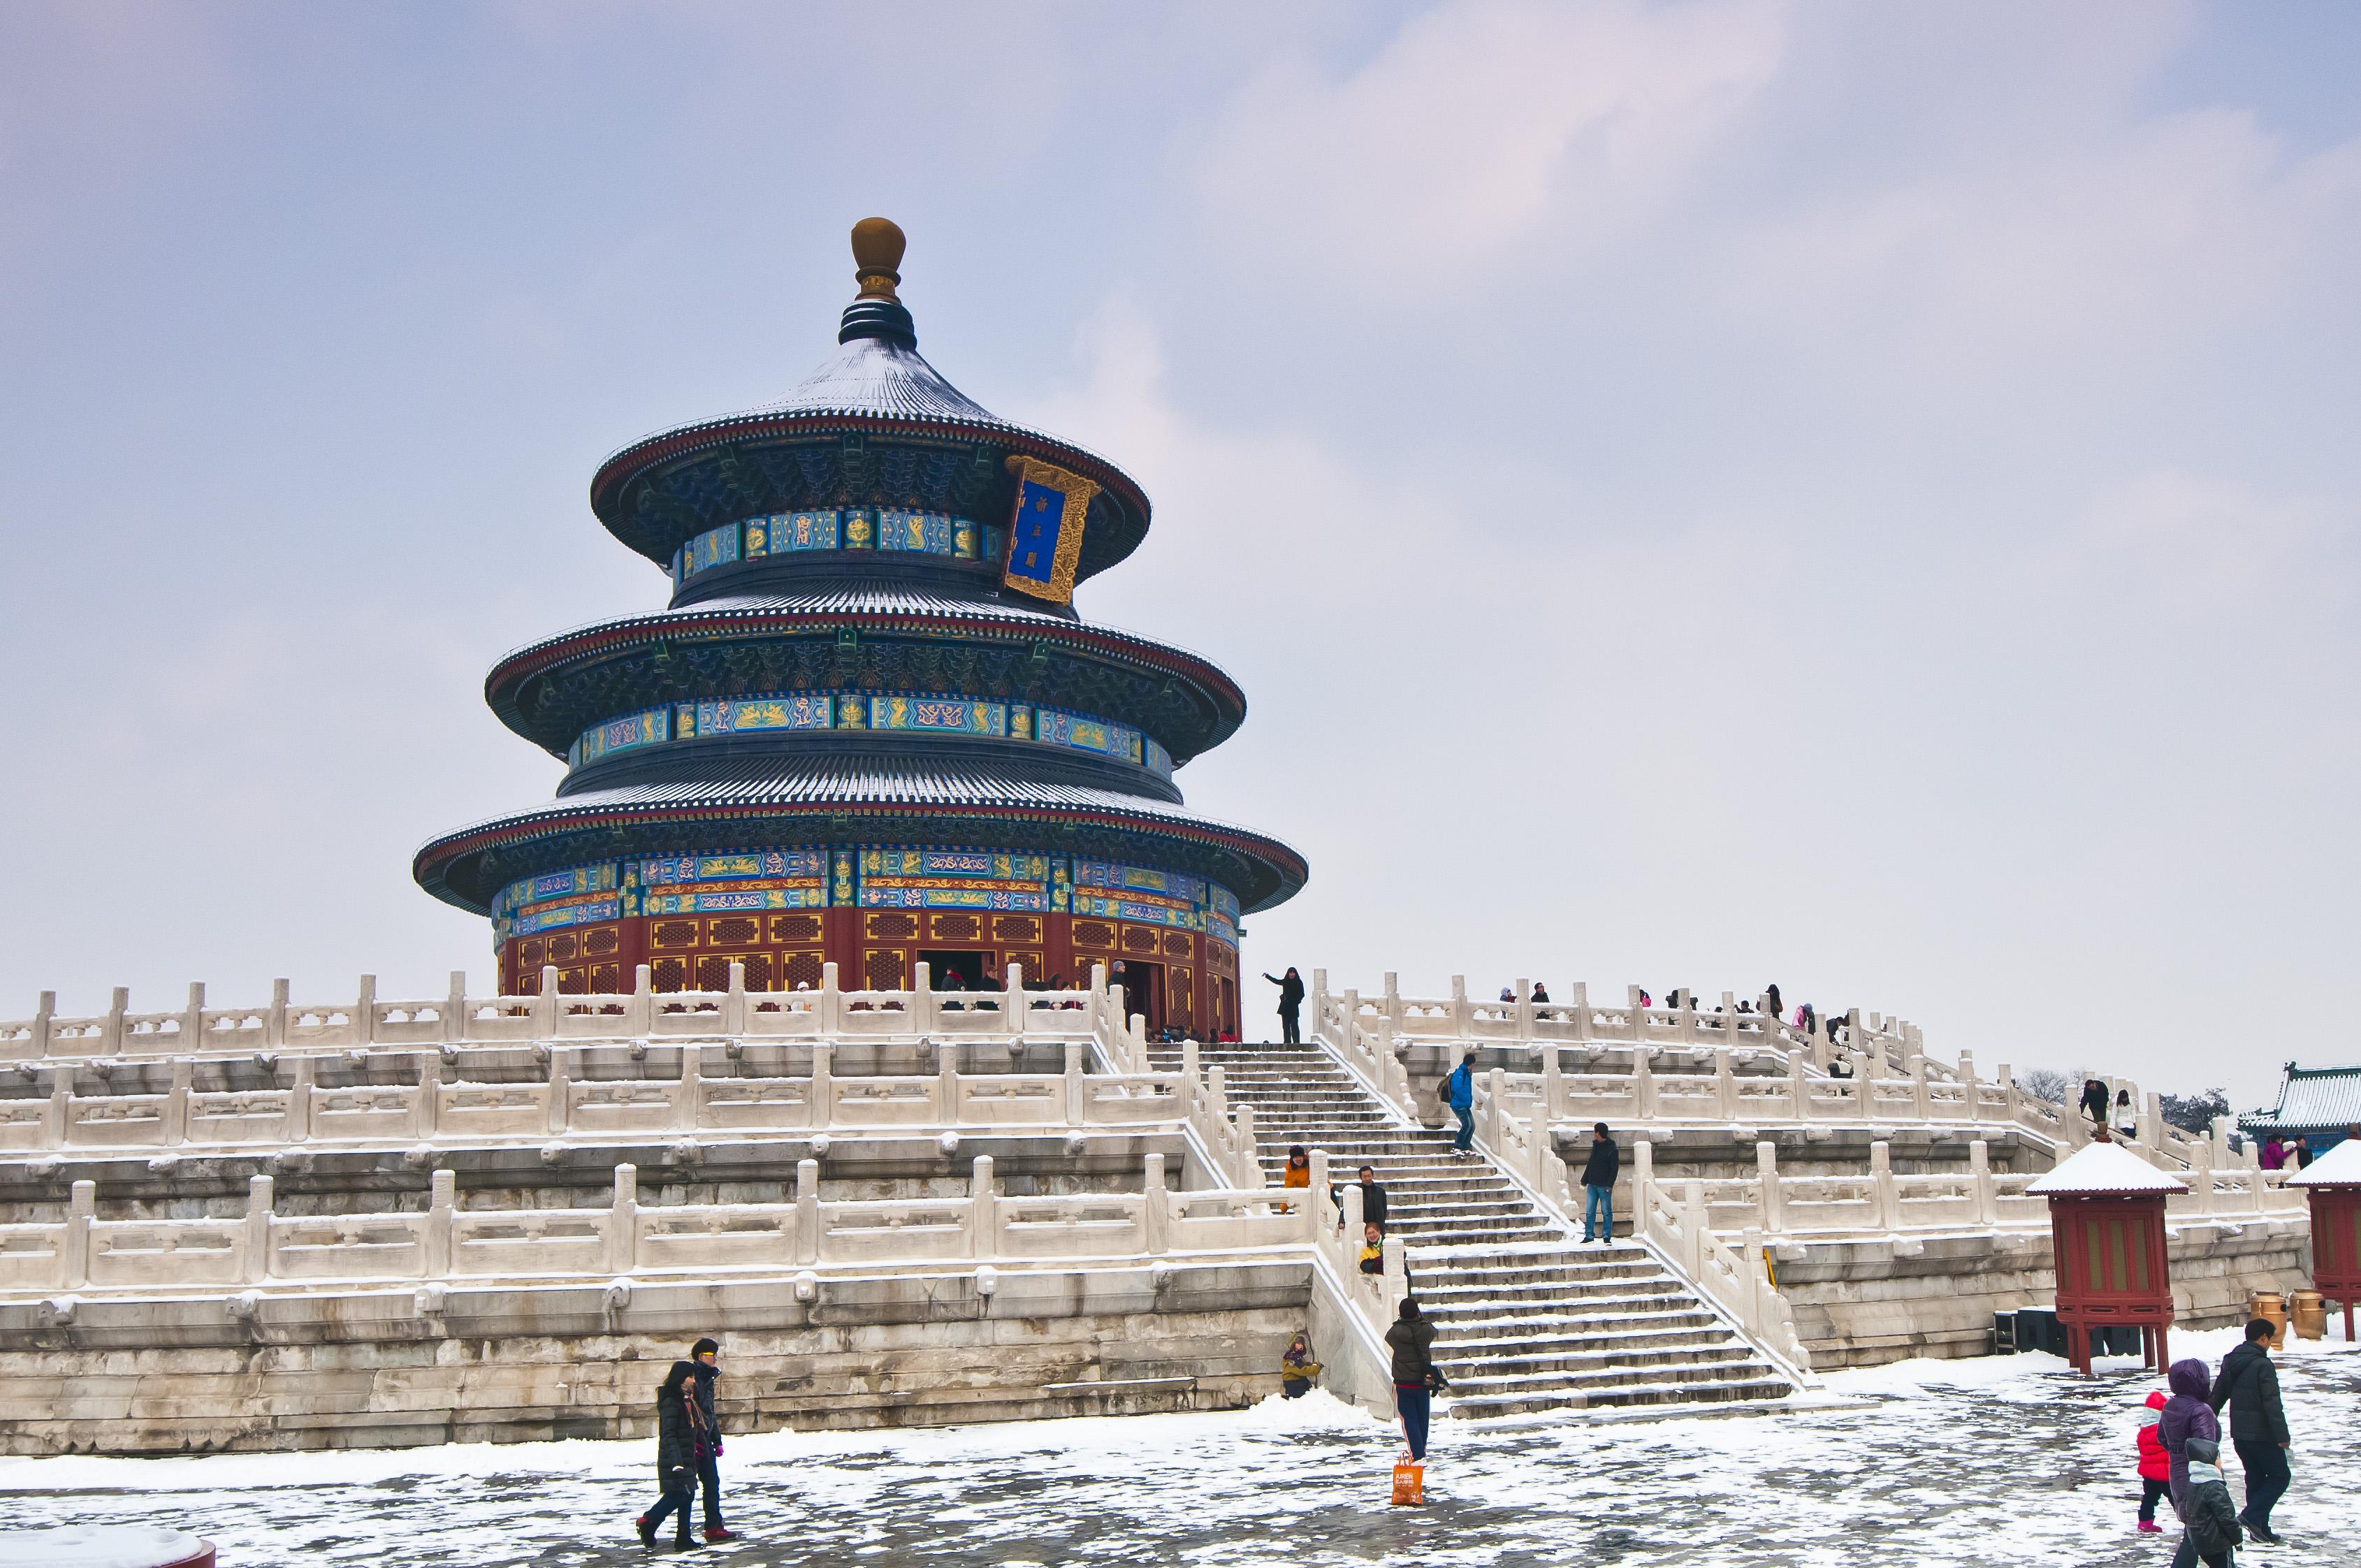 北京最美雪景图片